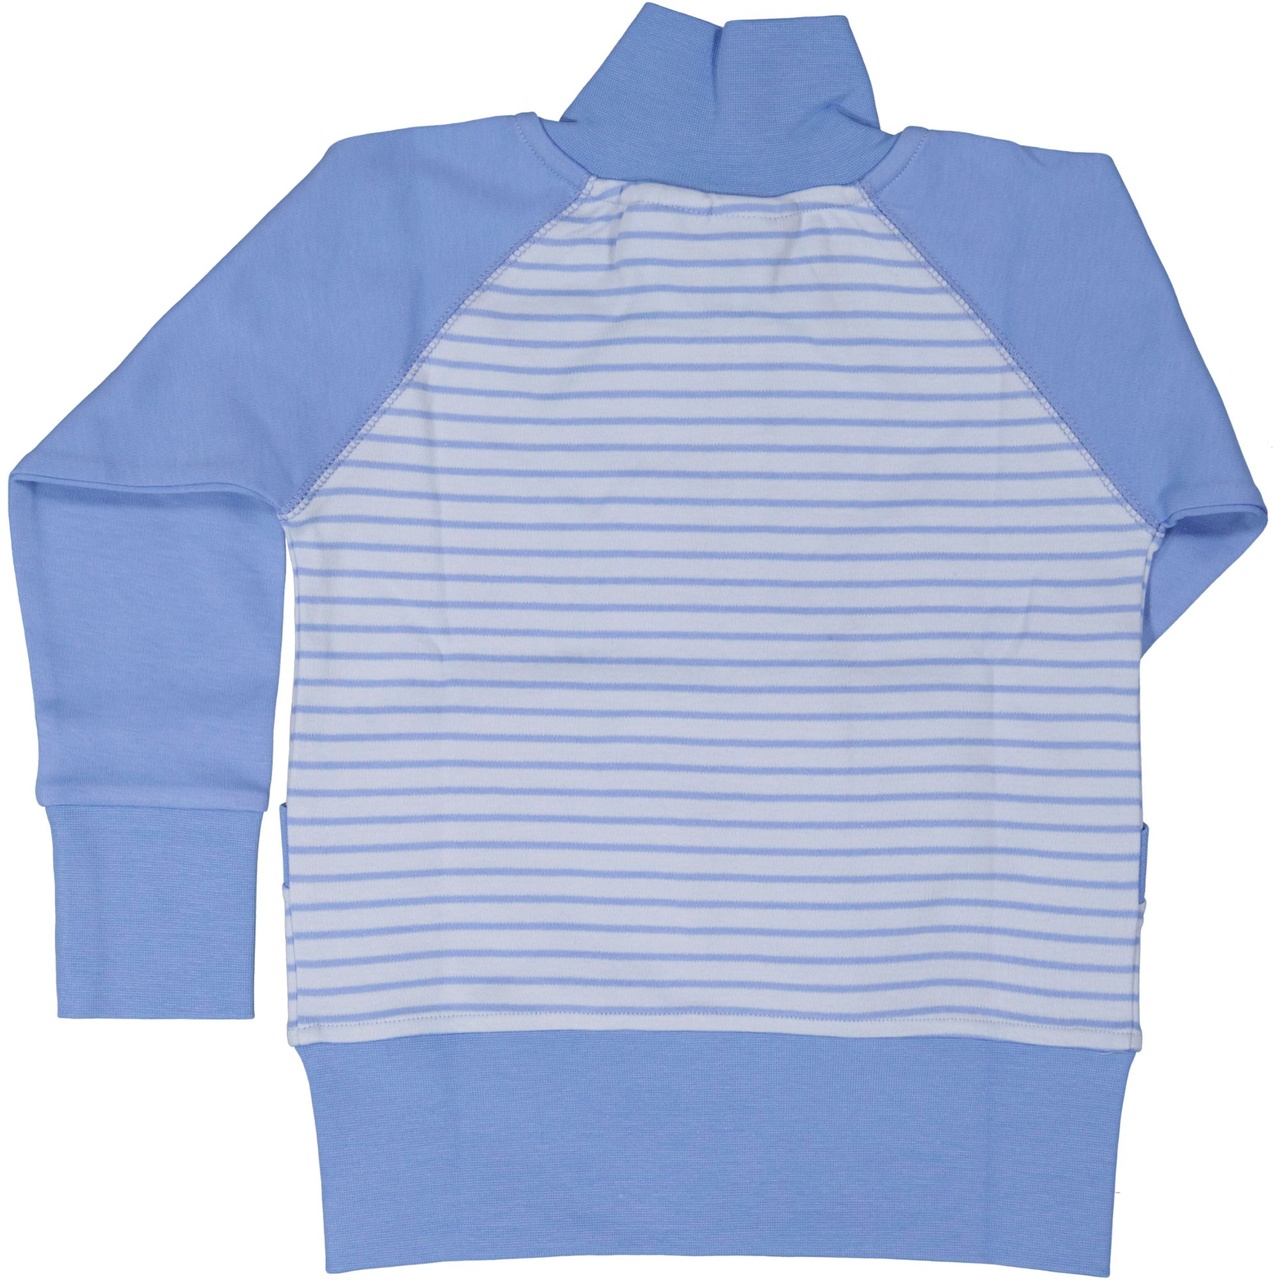 Zip sweater Light blue/blue